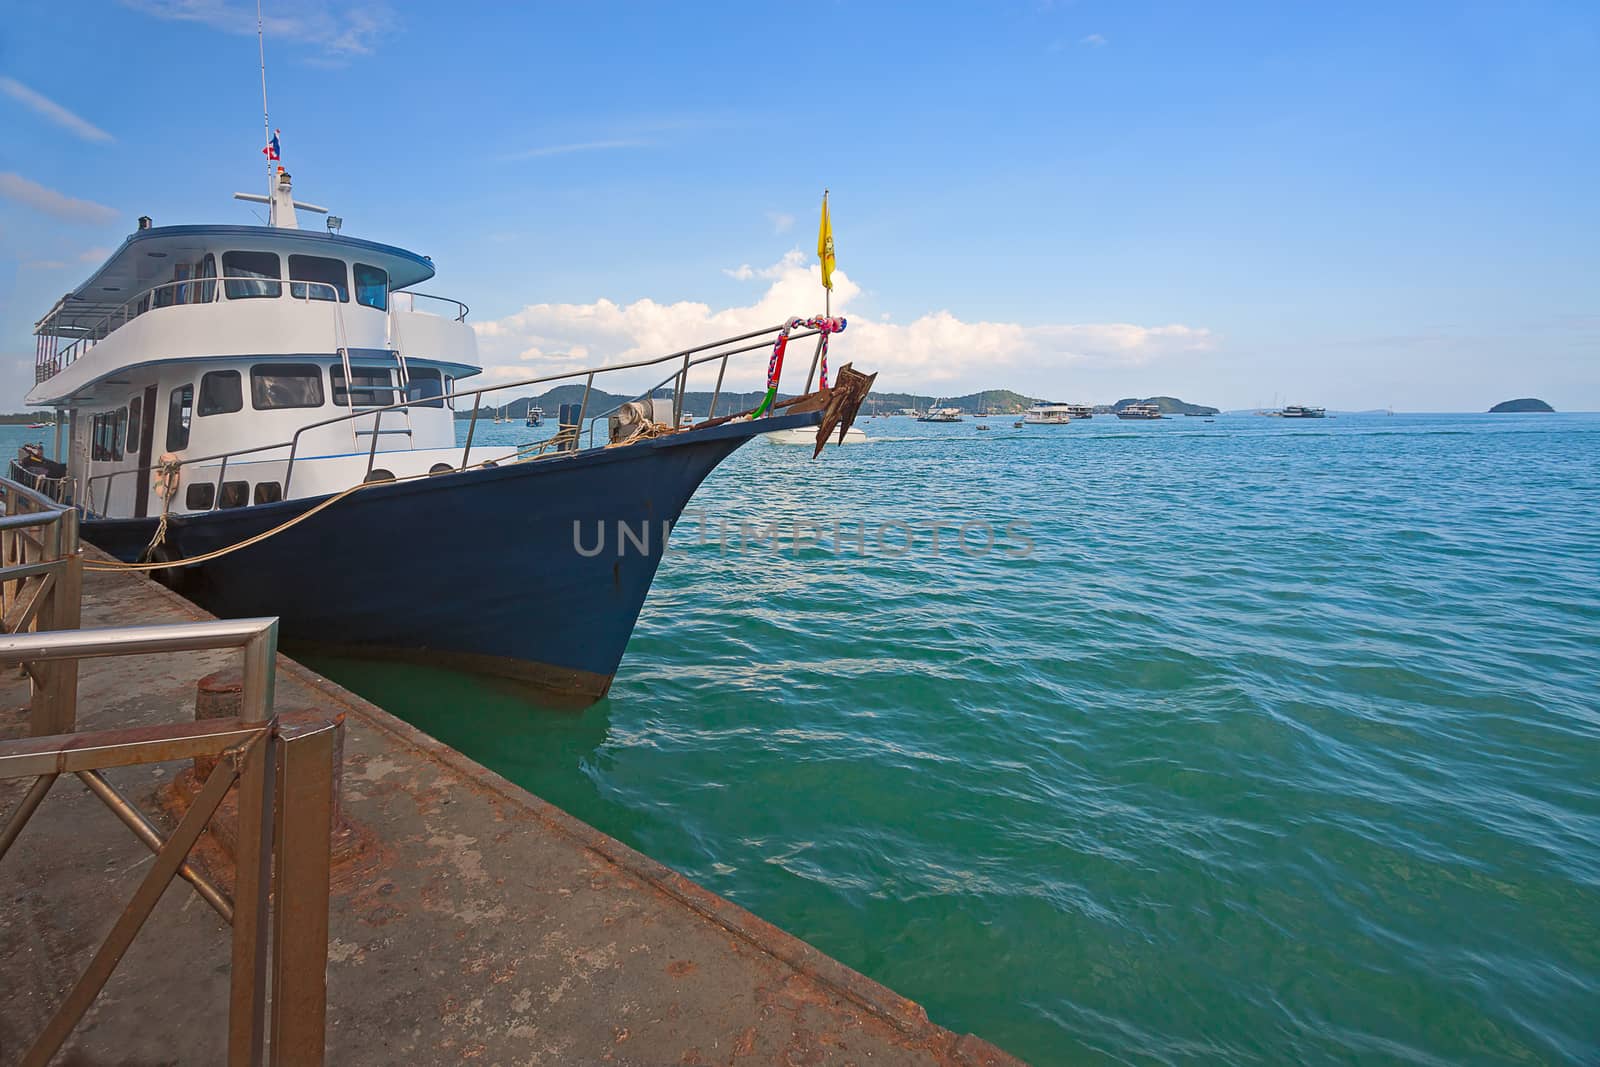 Ships  at berth waiting for tourists, Andaman Sea, Thailand.